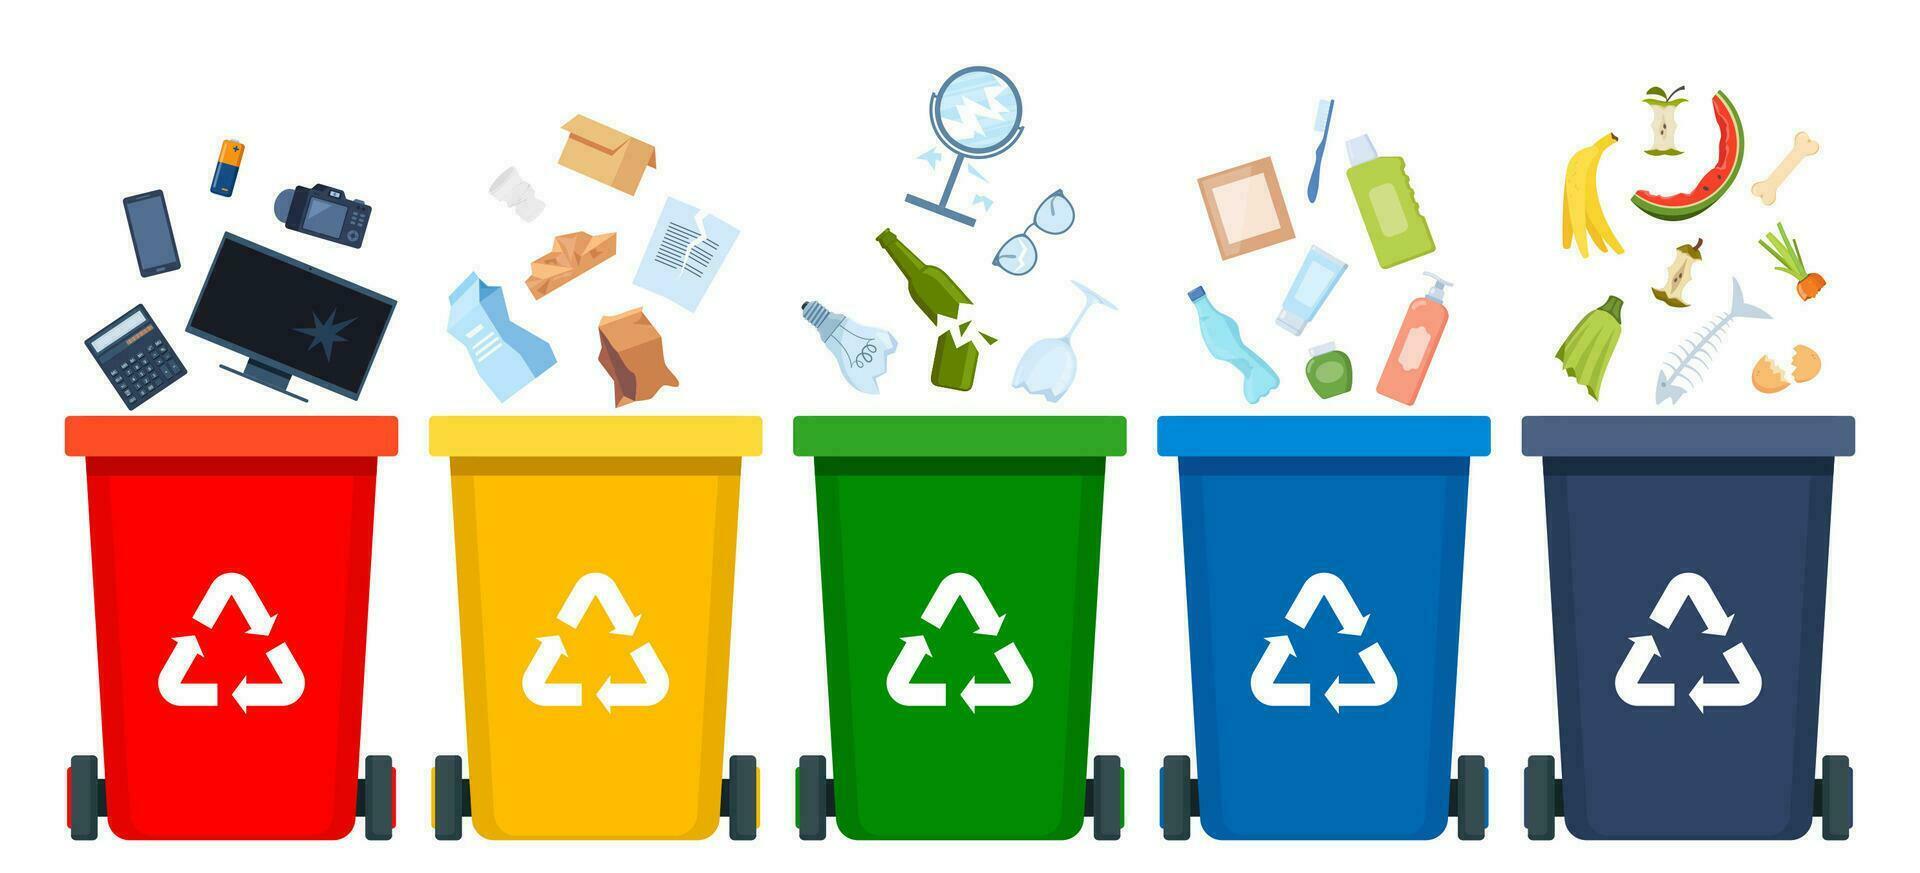 vuilnis sorteren set. bakken met recycling symbolen voor elektronisch afval, plastic, metaal, glas, papier, biologisch afval. vector illustratie voor nul afval, milieu bescherming concept.